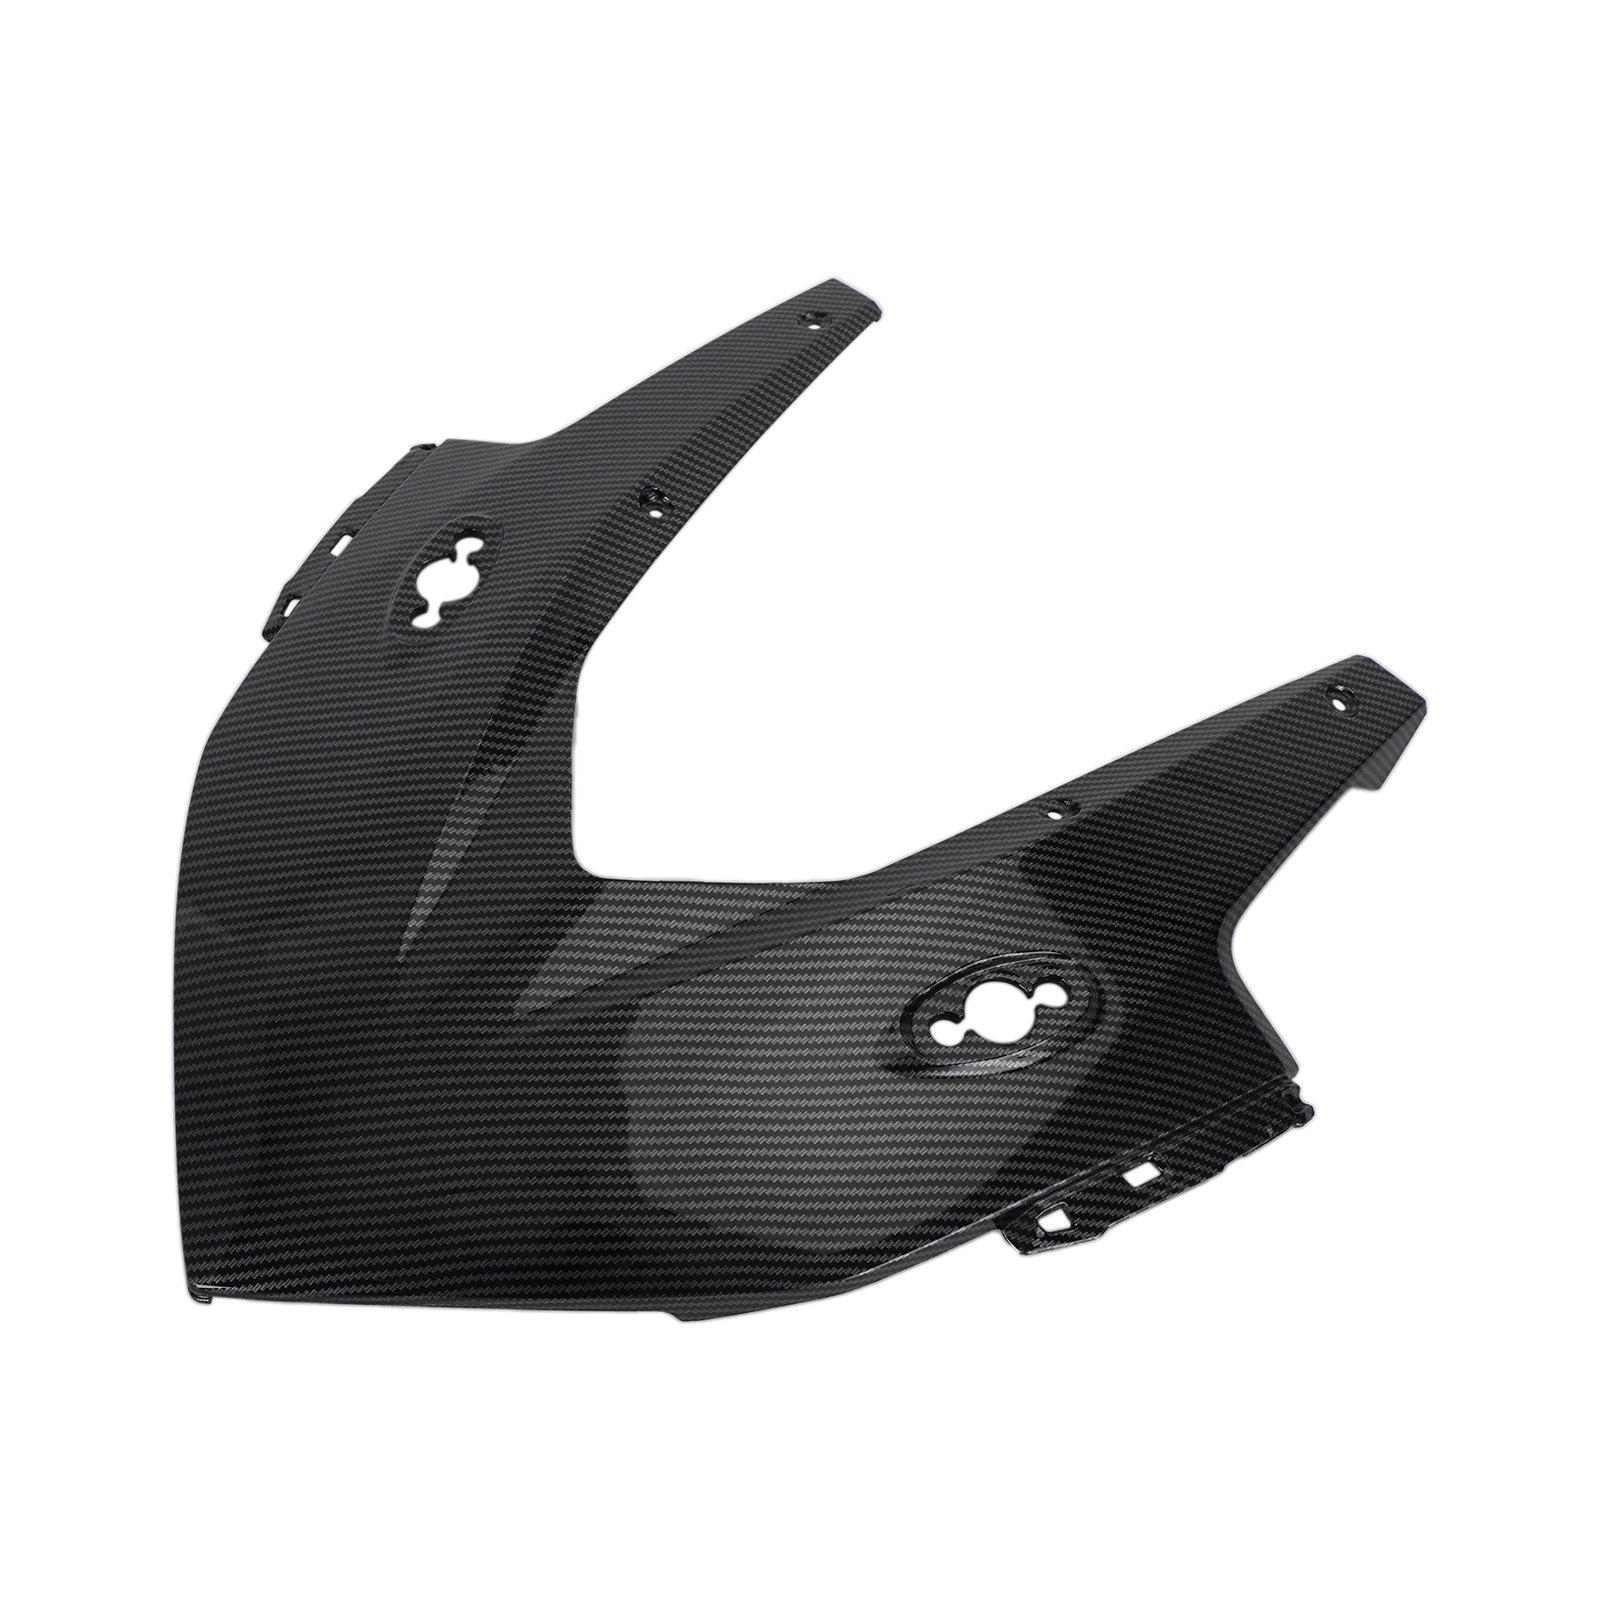 Carena di copertura del pannello del faro anteriore per Honda CBR500R 2019-2021 Carbonio